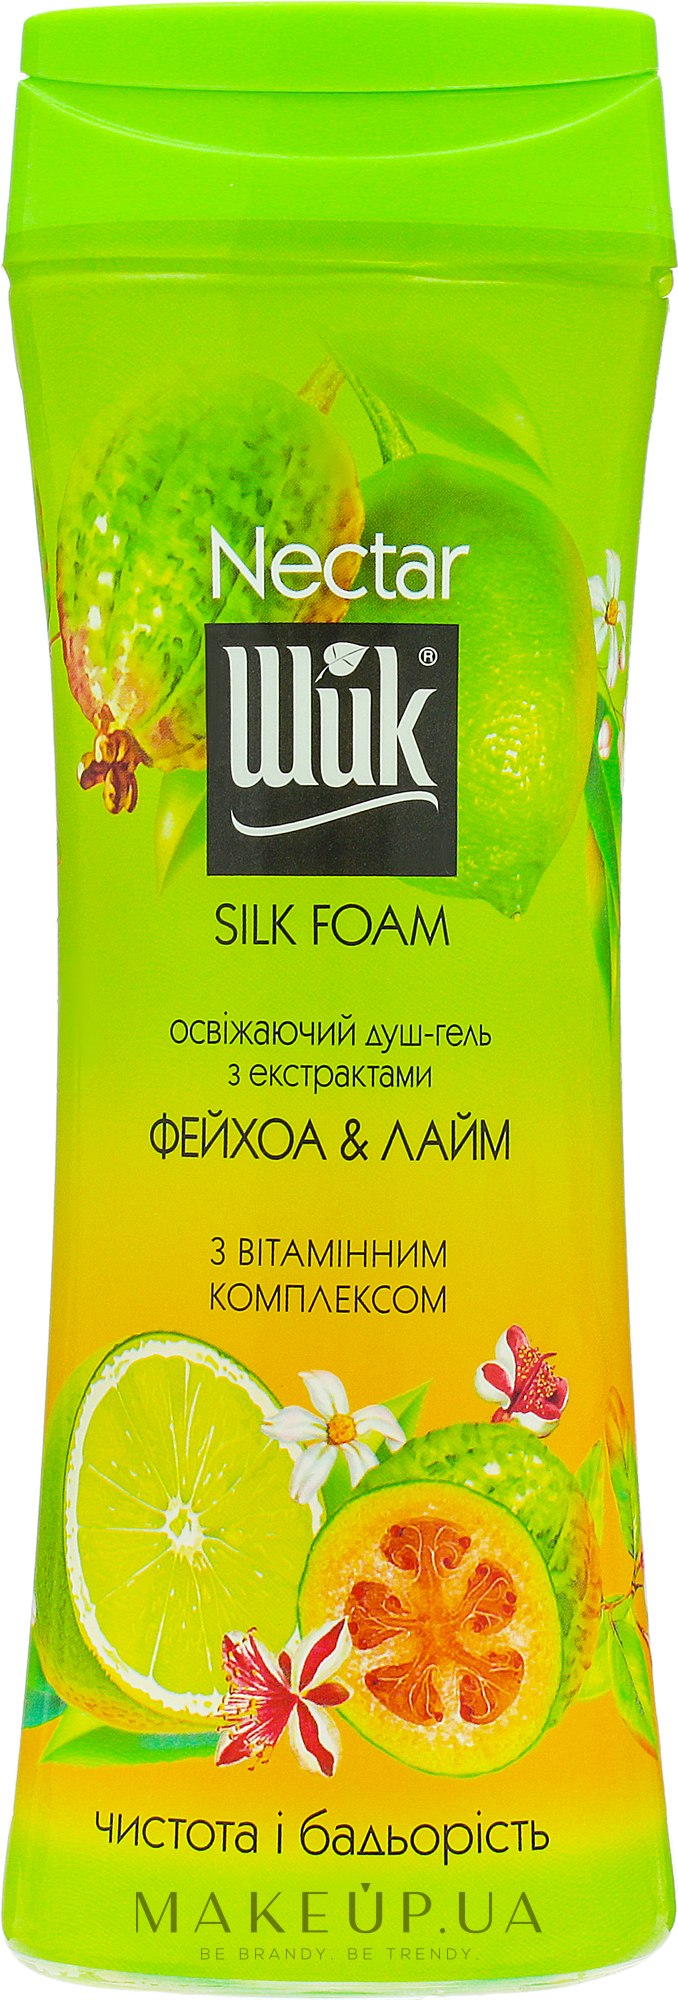 Освіжальний душ-гель "Фейхоа і лайм" - Шик Nectar Silk Foam — фото 250ml